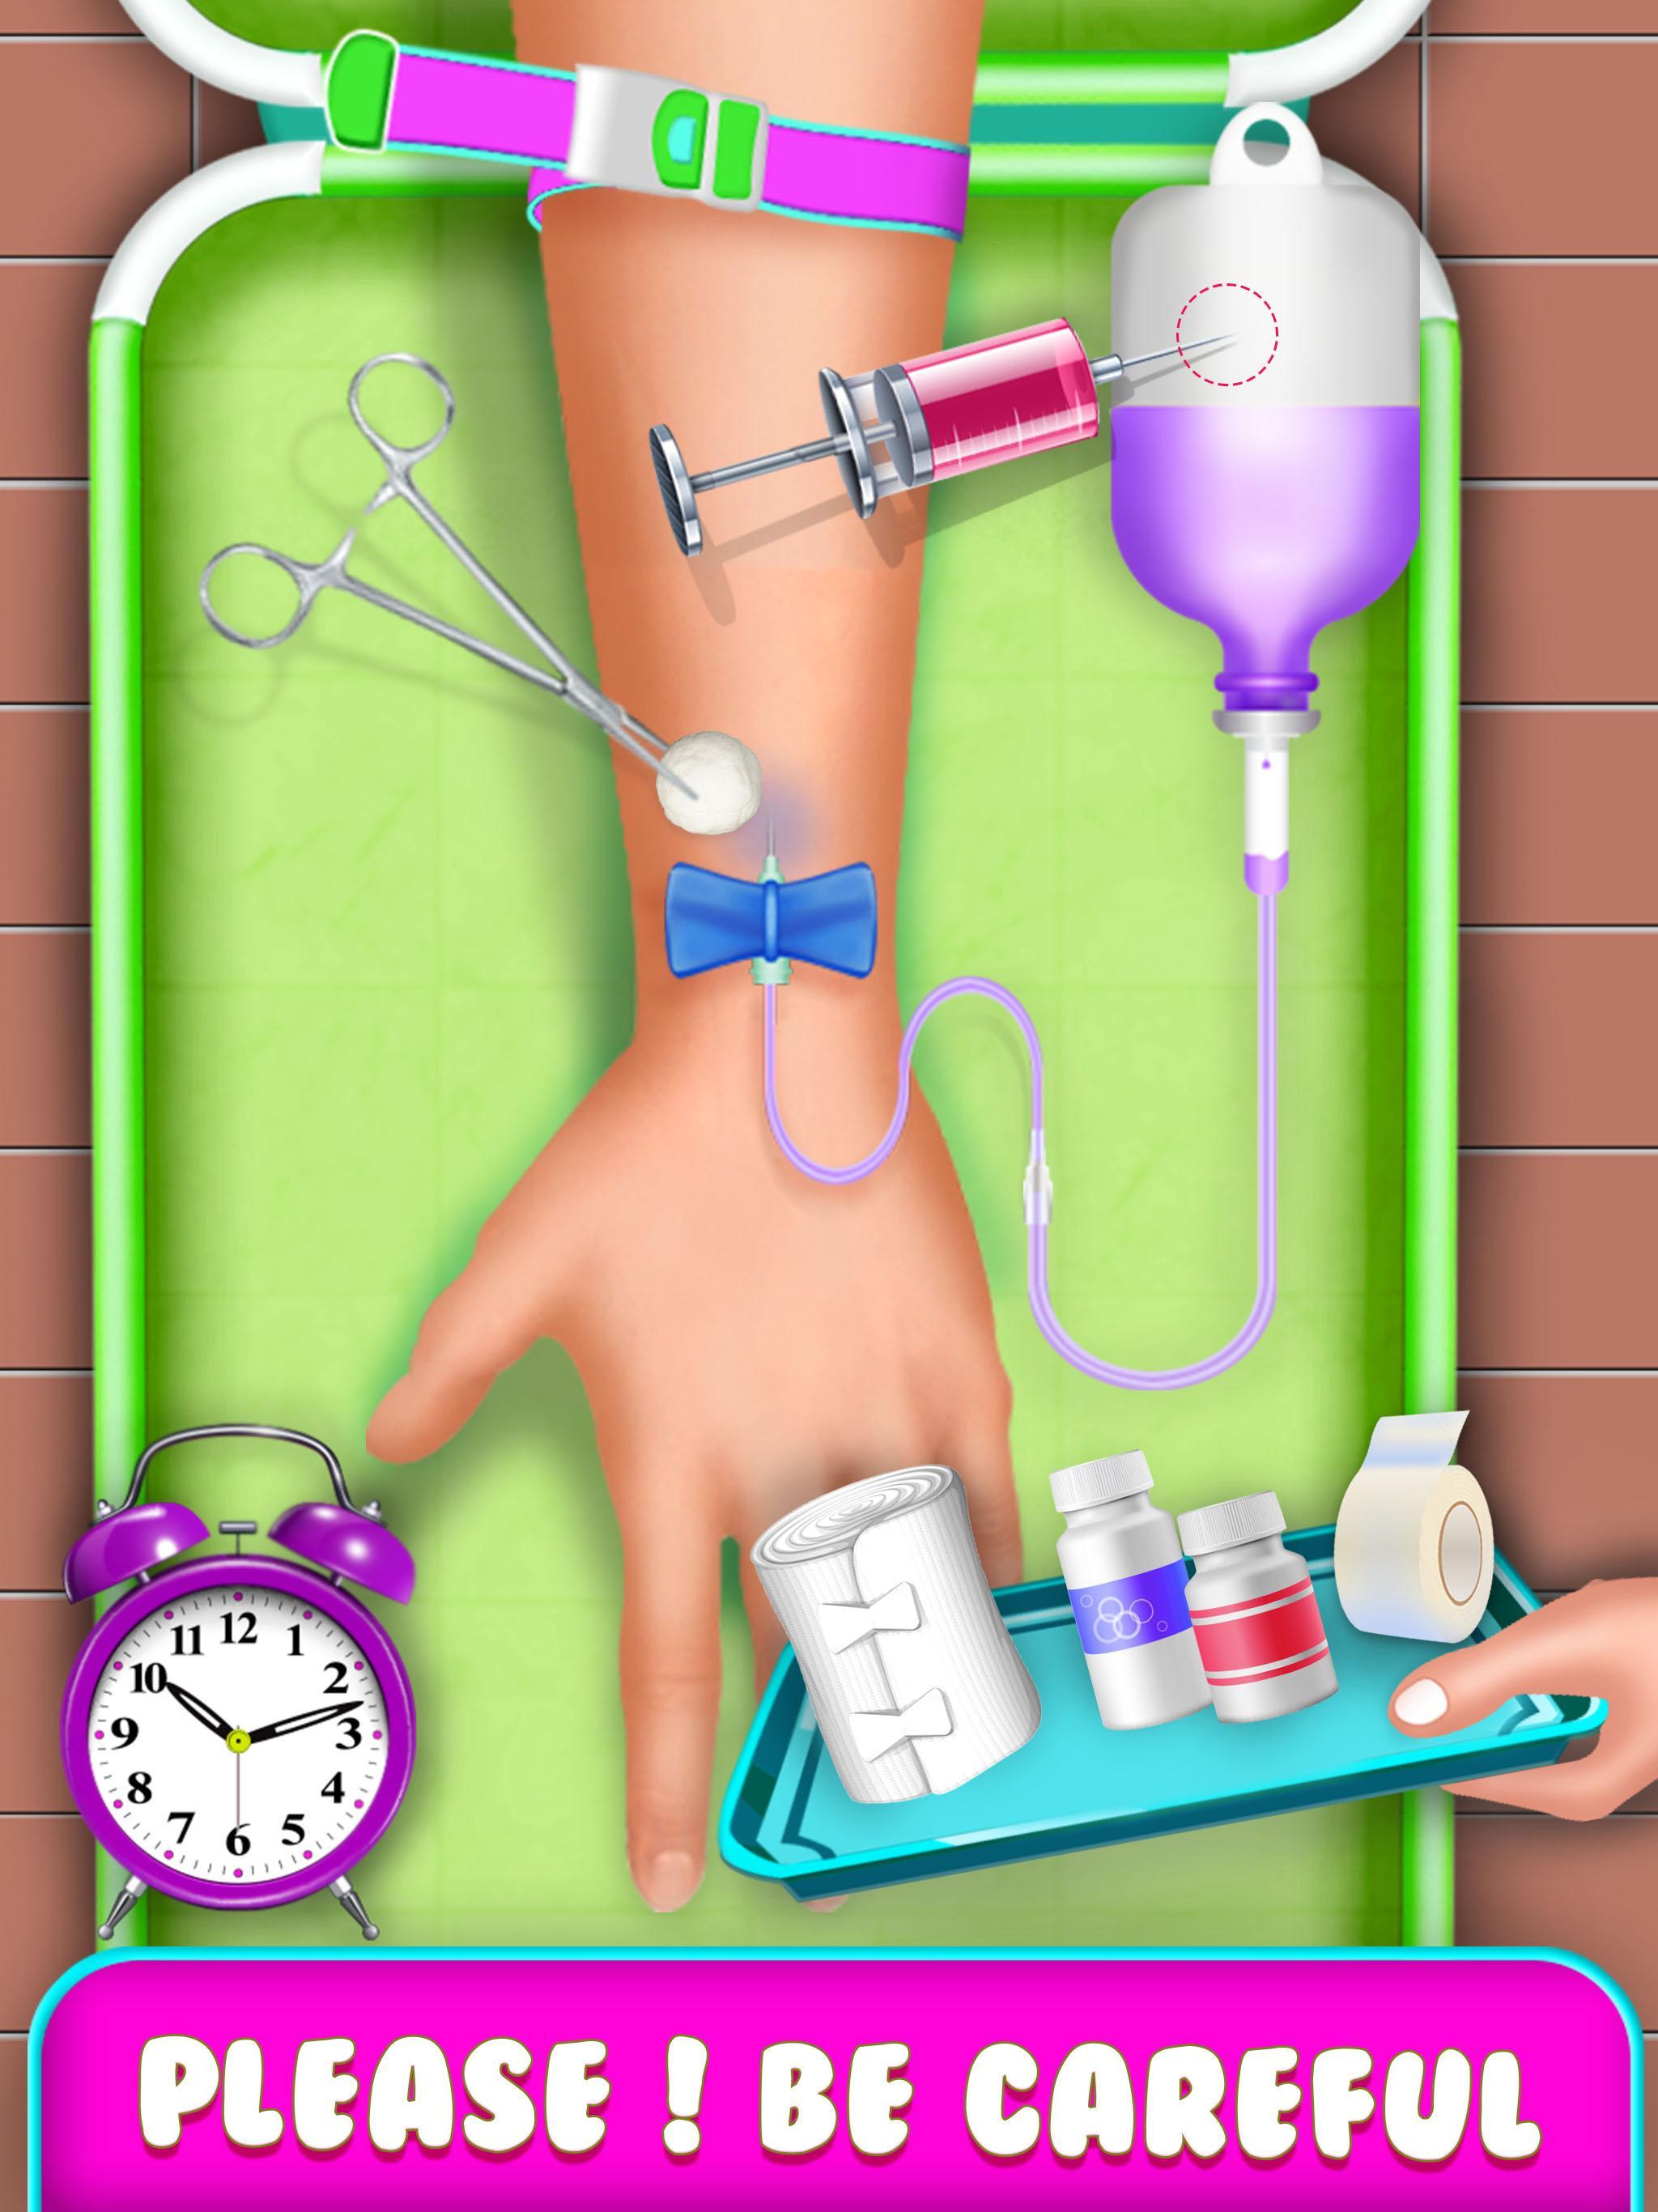 Имитаторы для больницы. Игра в доктора с уколами. Игры Simulator Injection. Игра доктор доставать предметы.